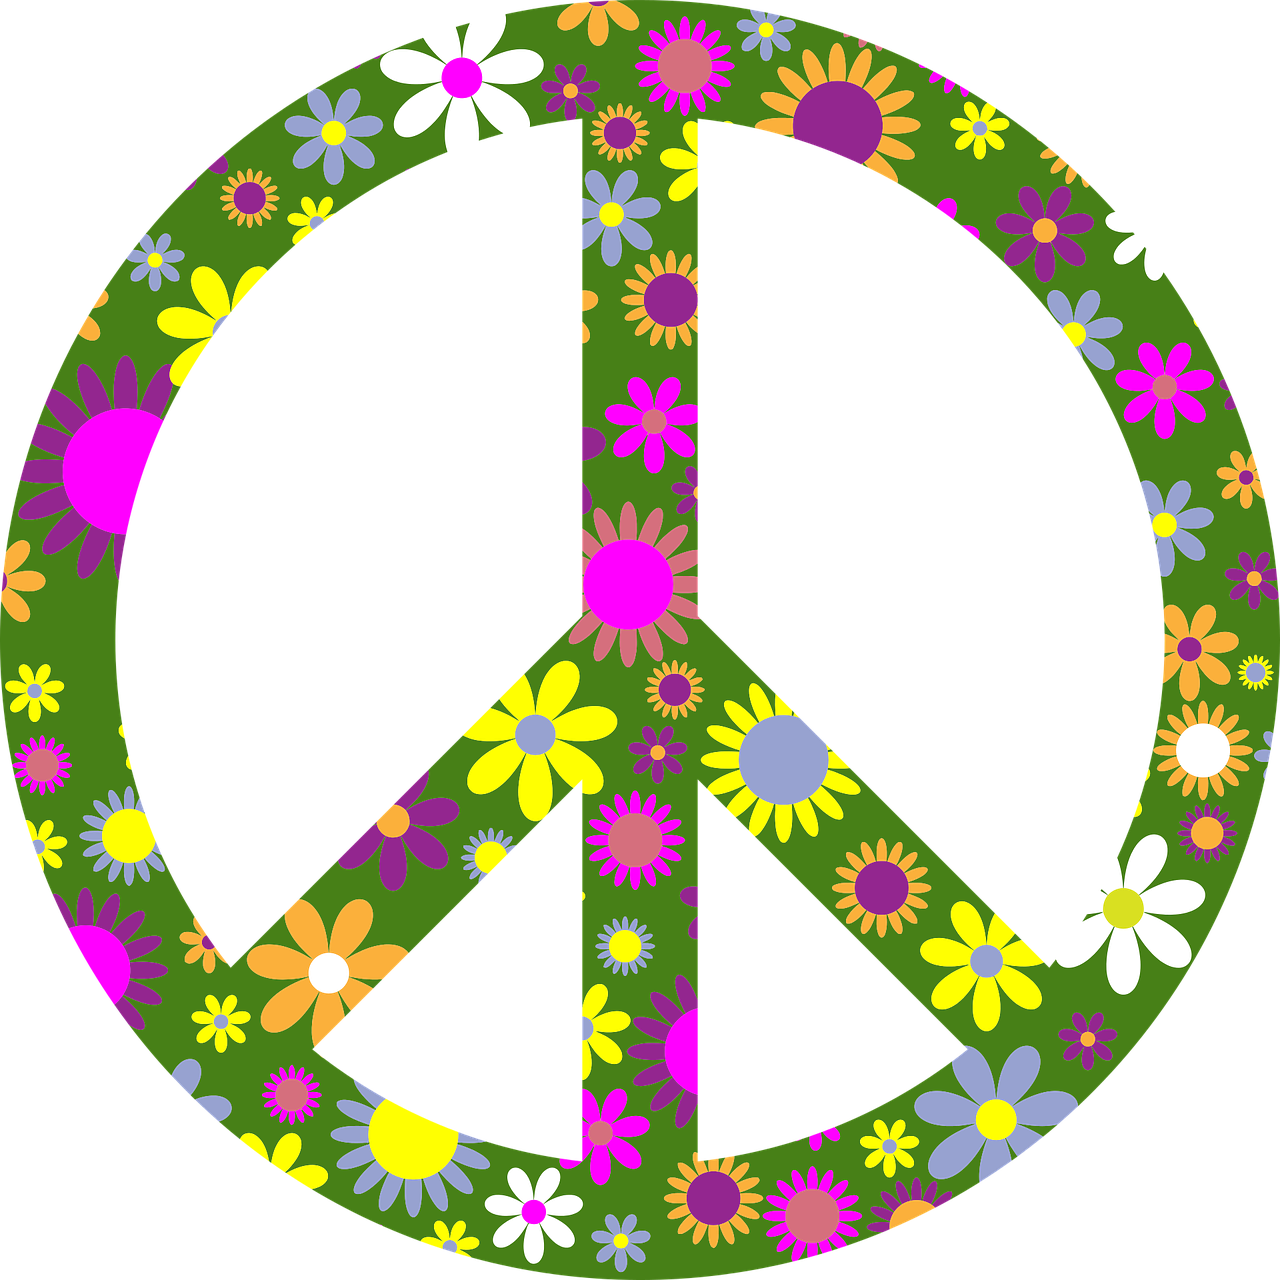 Une méditation inspirante pour se préparer et s'entraîner à faire la paix. En effet, j'observe que si vis pacem, para pacem. Si tu veux la paix, prépare la paix, entraîne-toi à la paix, dans tes intentions, tes pensées, tes paroles et tes actes. Si tu veux la paix, pratique la paix et en attendant : entraîne toi par la pratique de la méditation.